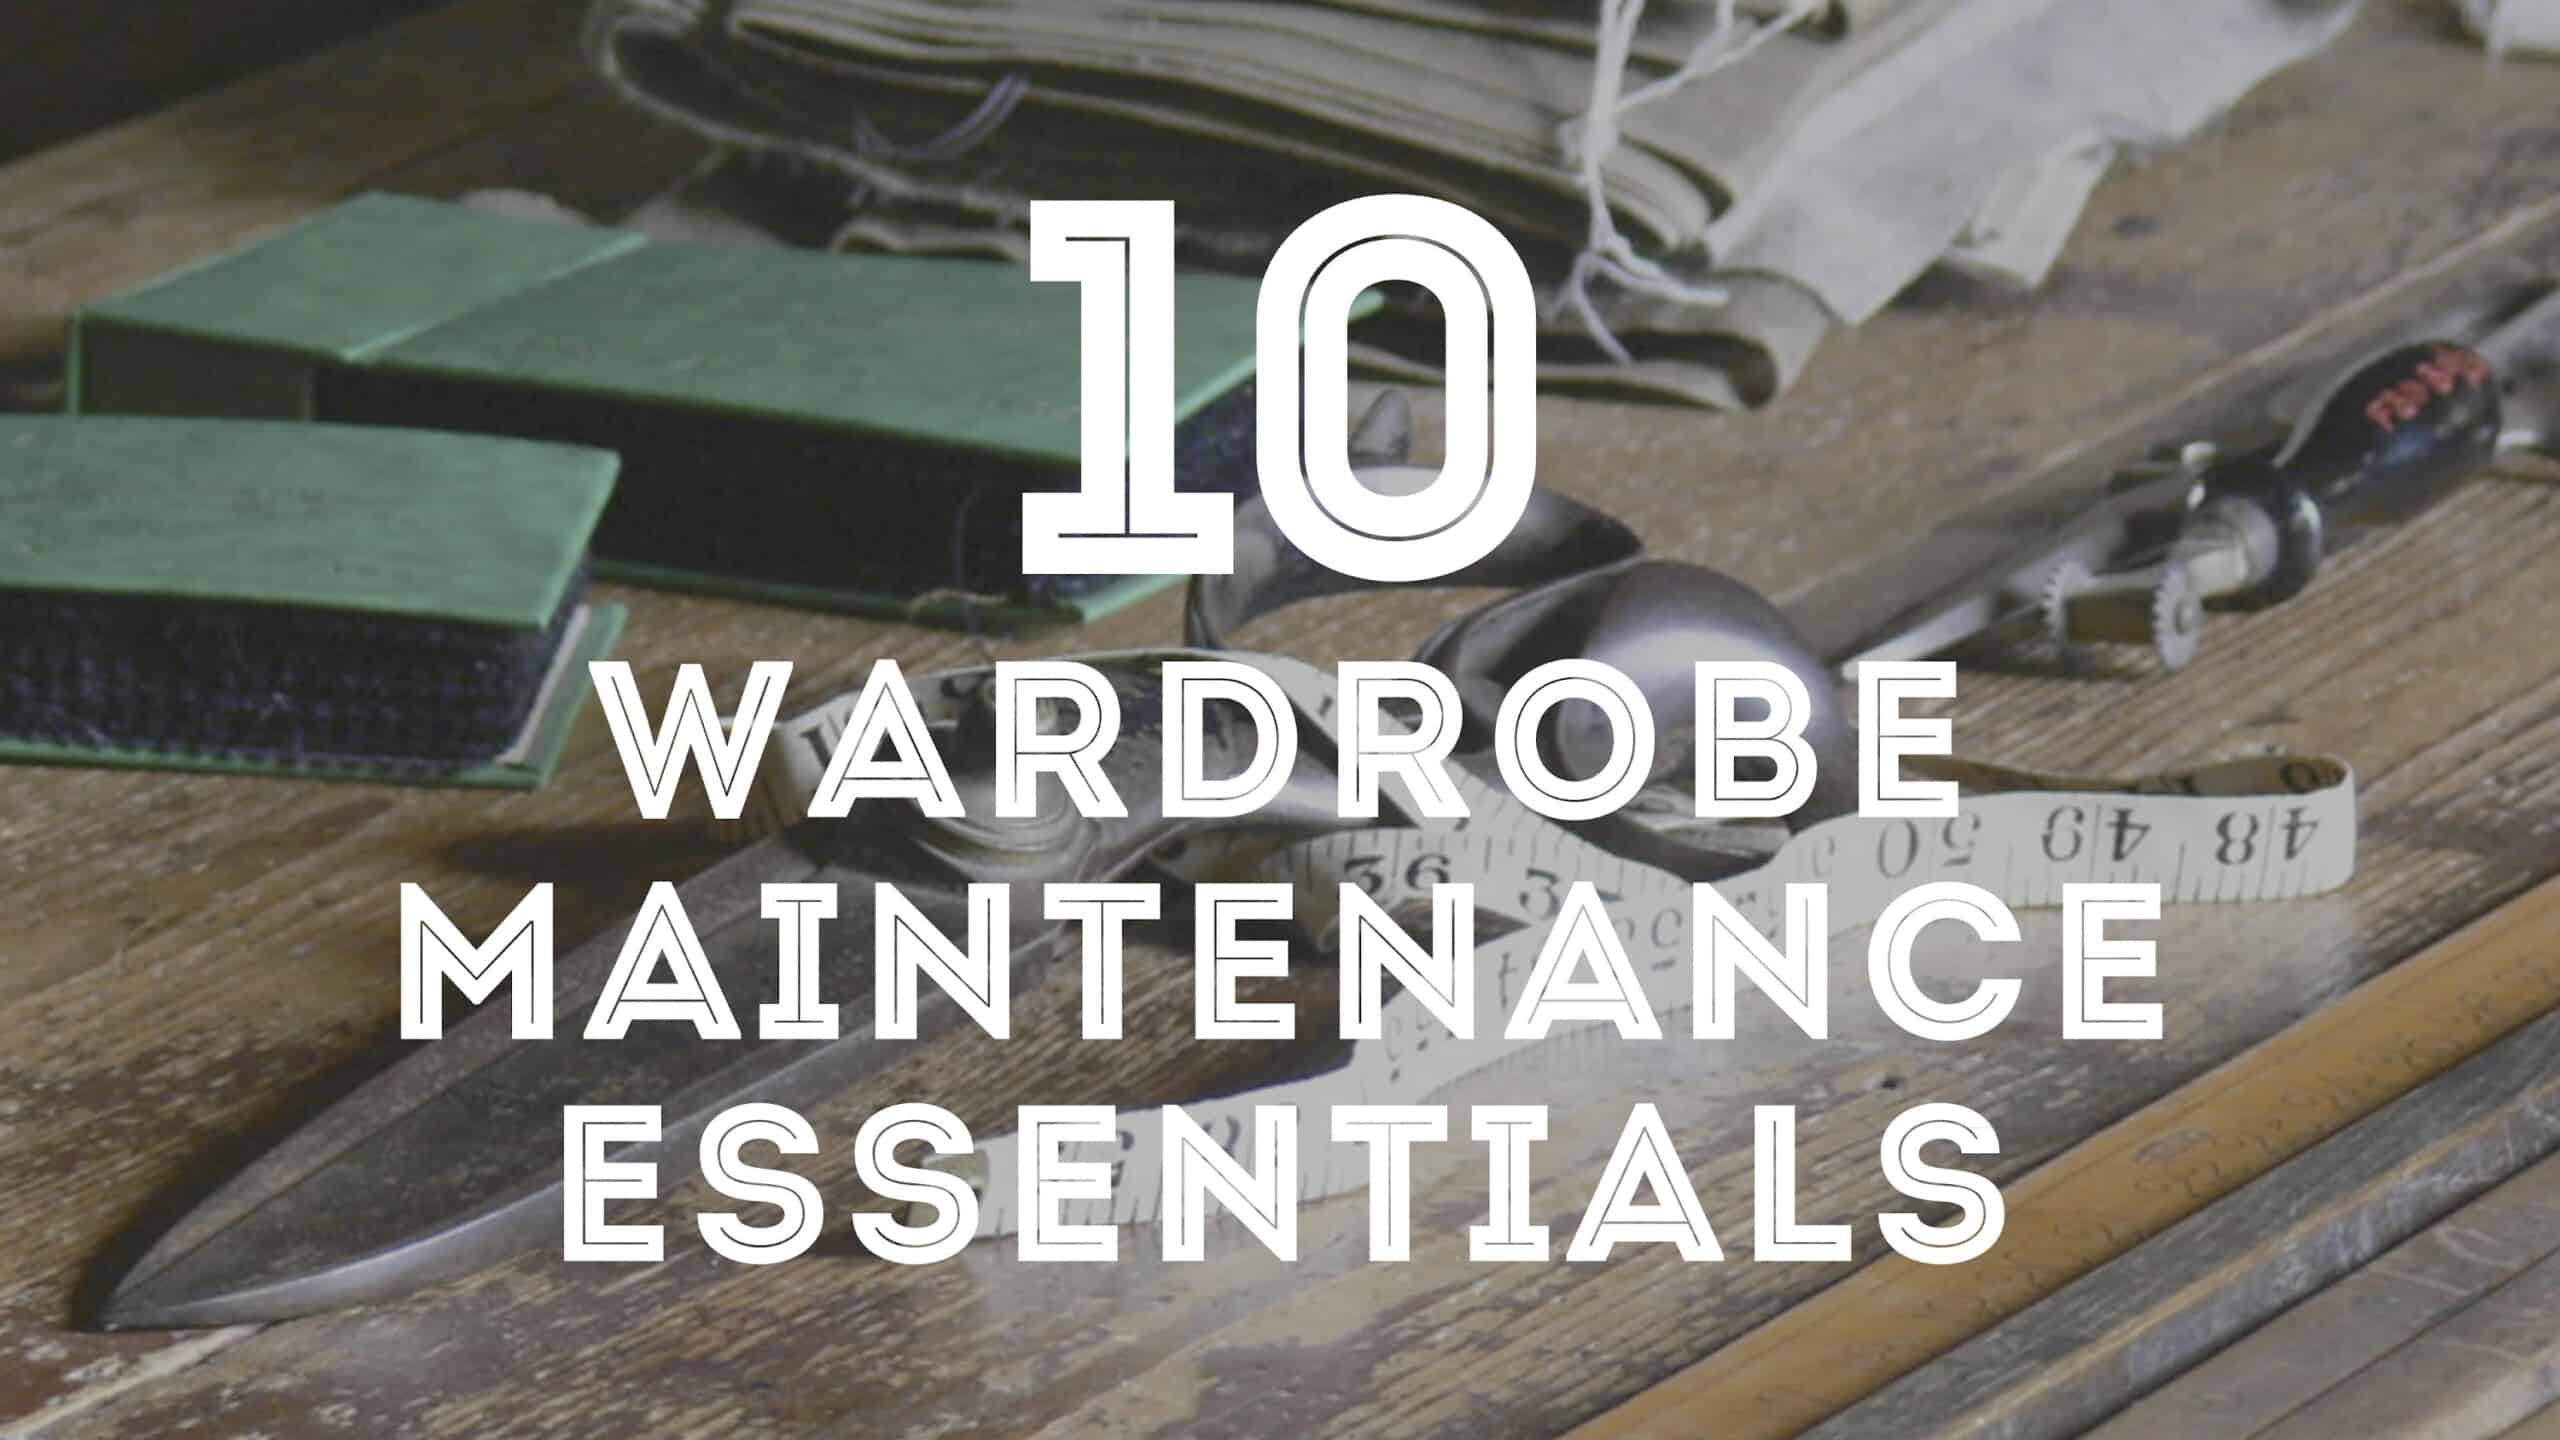 wardrobe maintenance essentials 3840x2160 scaled